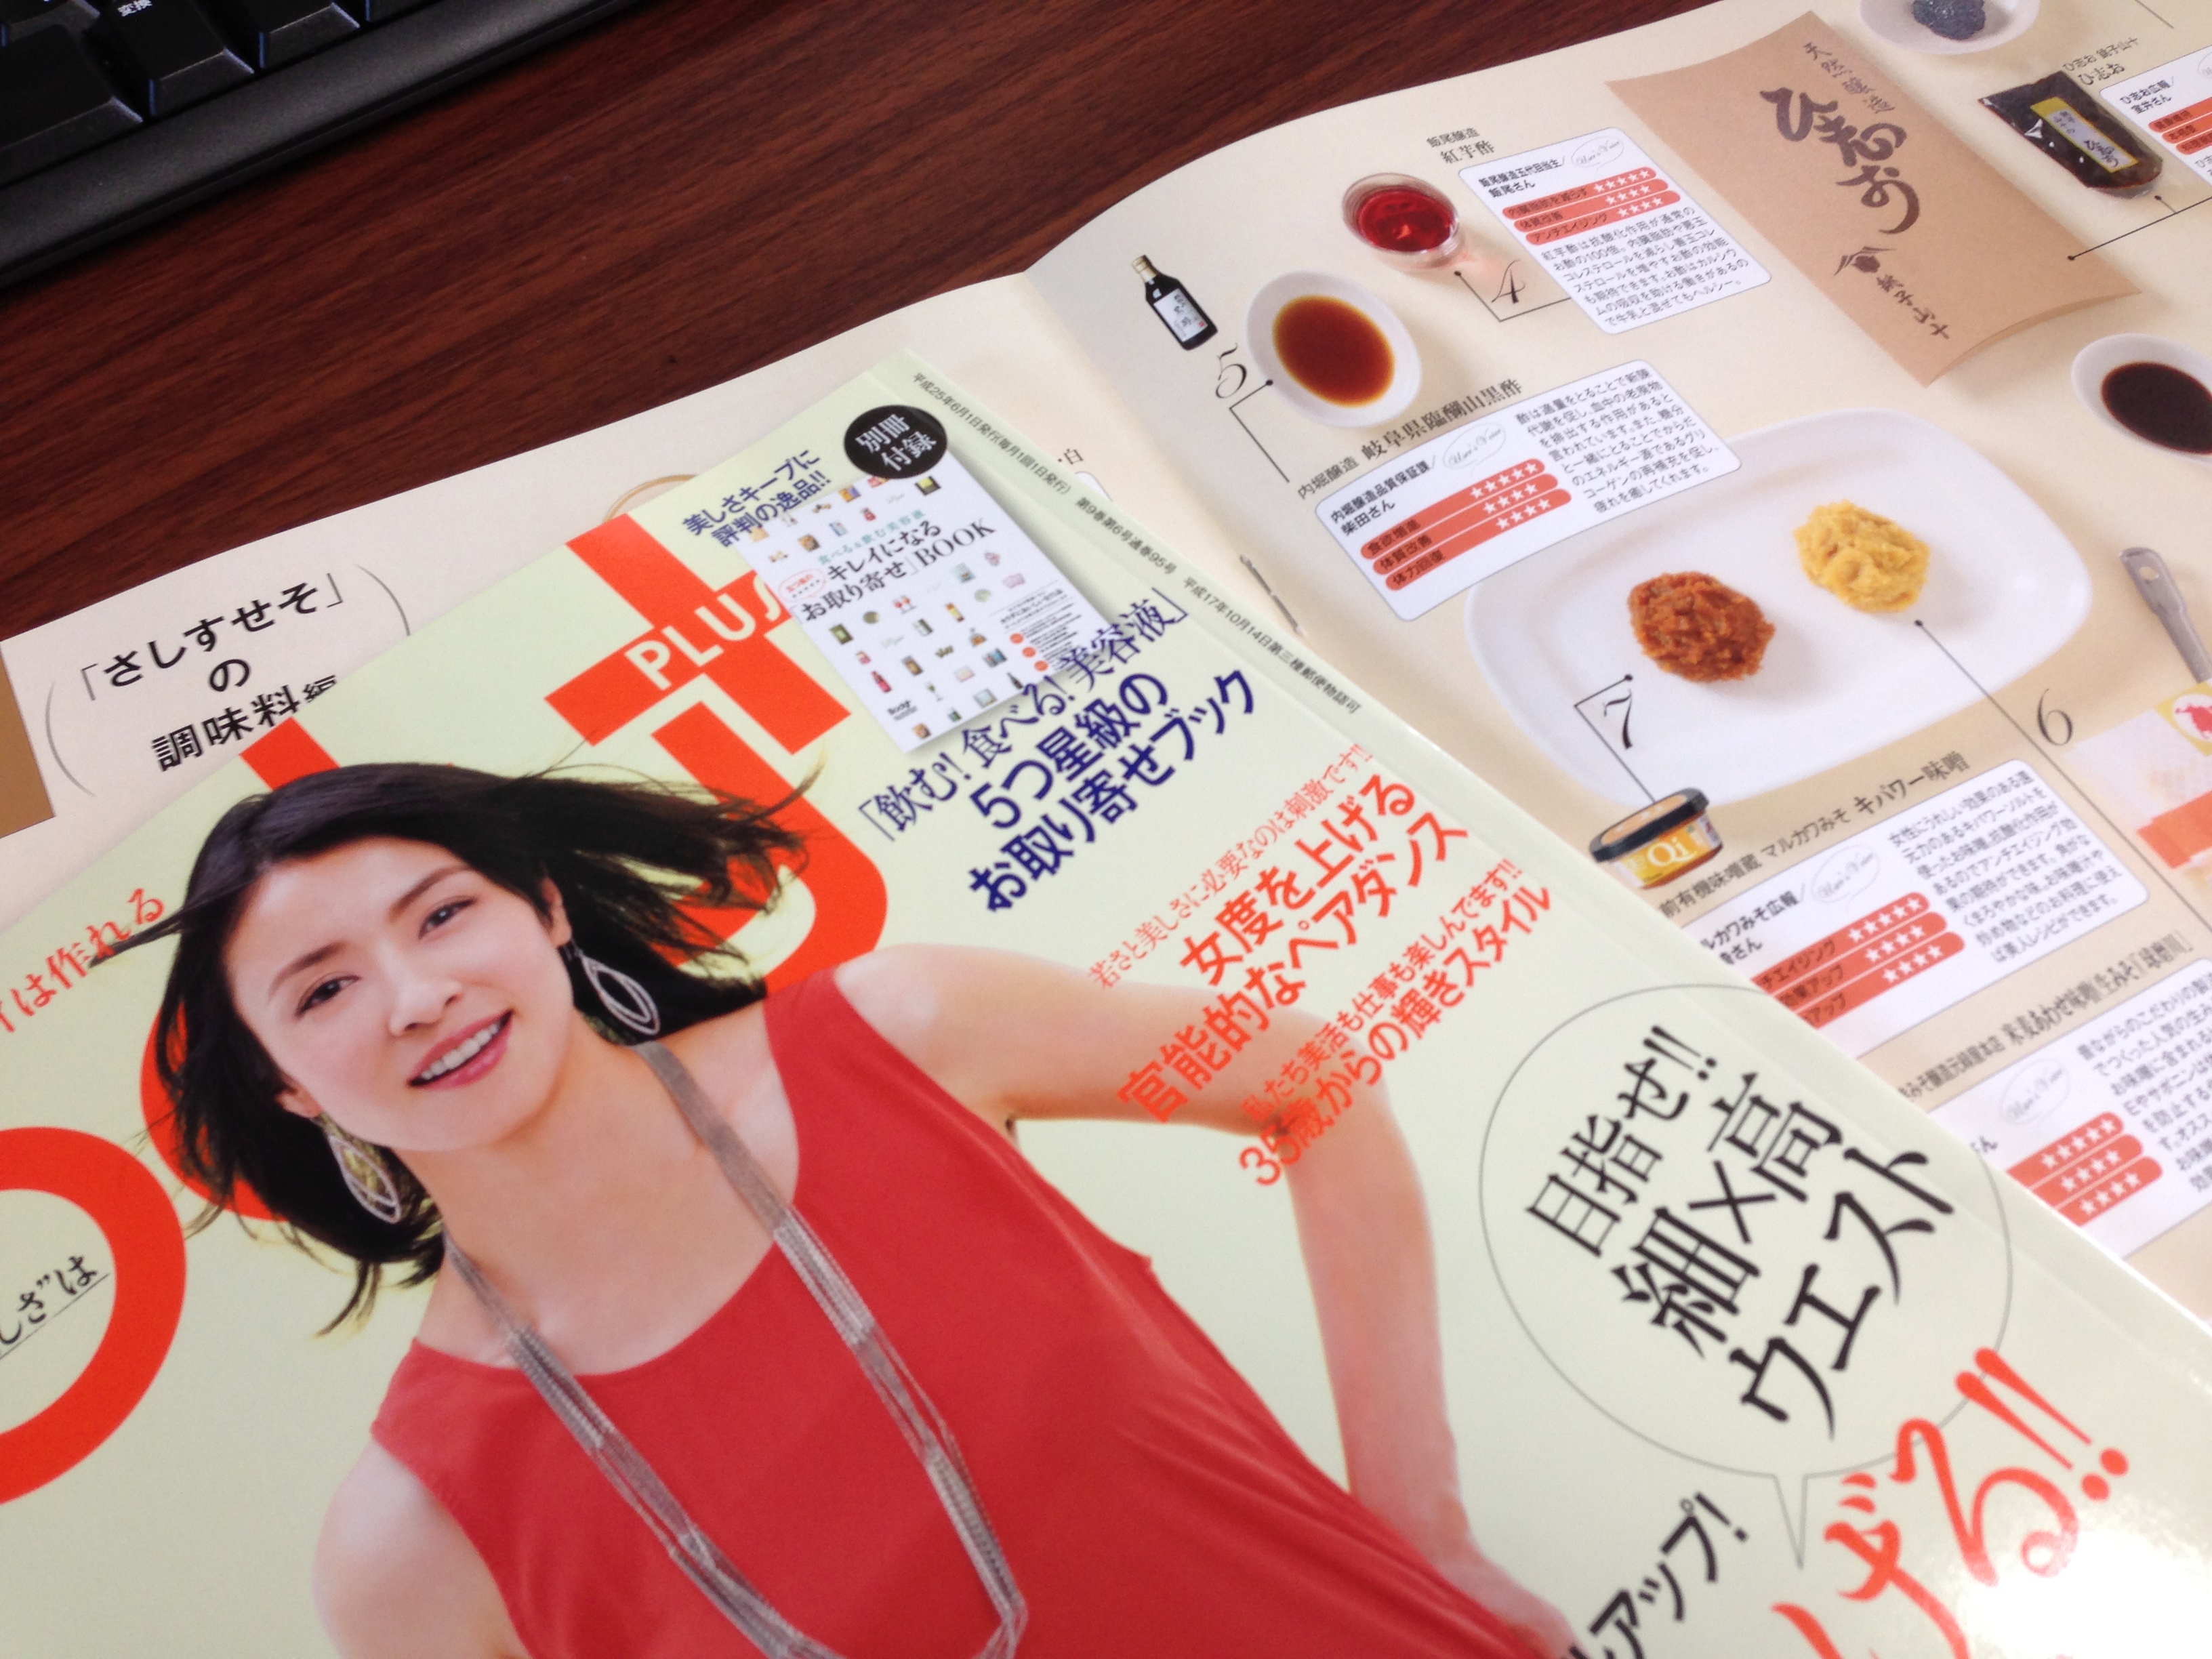 水野美紀さんが表紙をつとめる2013年6月のボディプラス